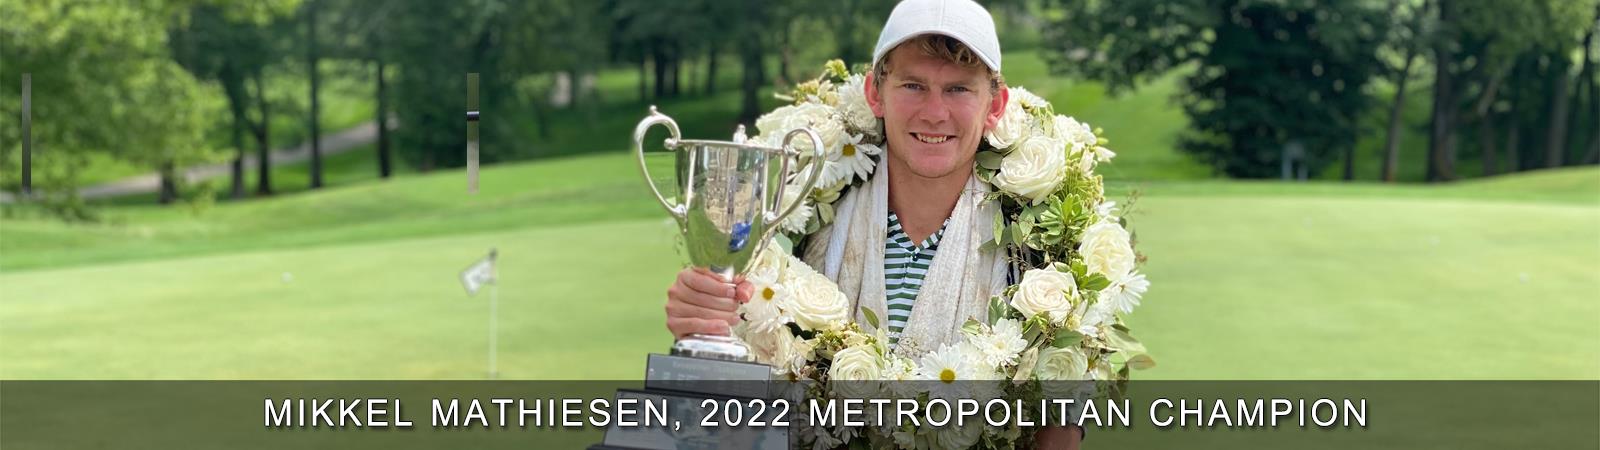 2022_-_Mikkel_Mathiesen_Championship_Banner